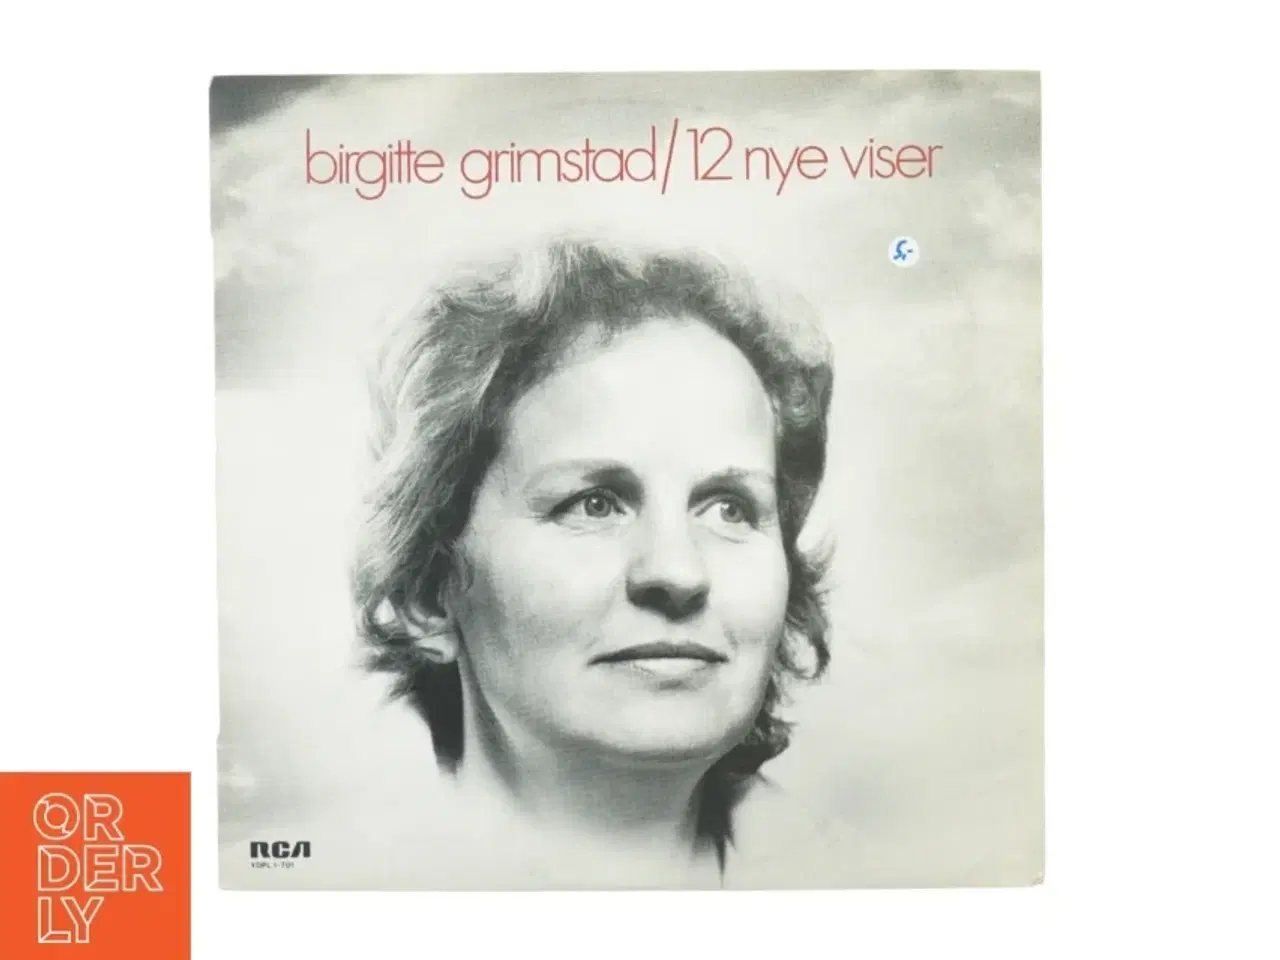 Billede 1 - Birgitte Grimstad, 12 nye viser fra Rca (str. 30 cm)